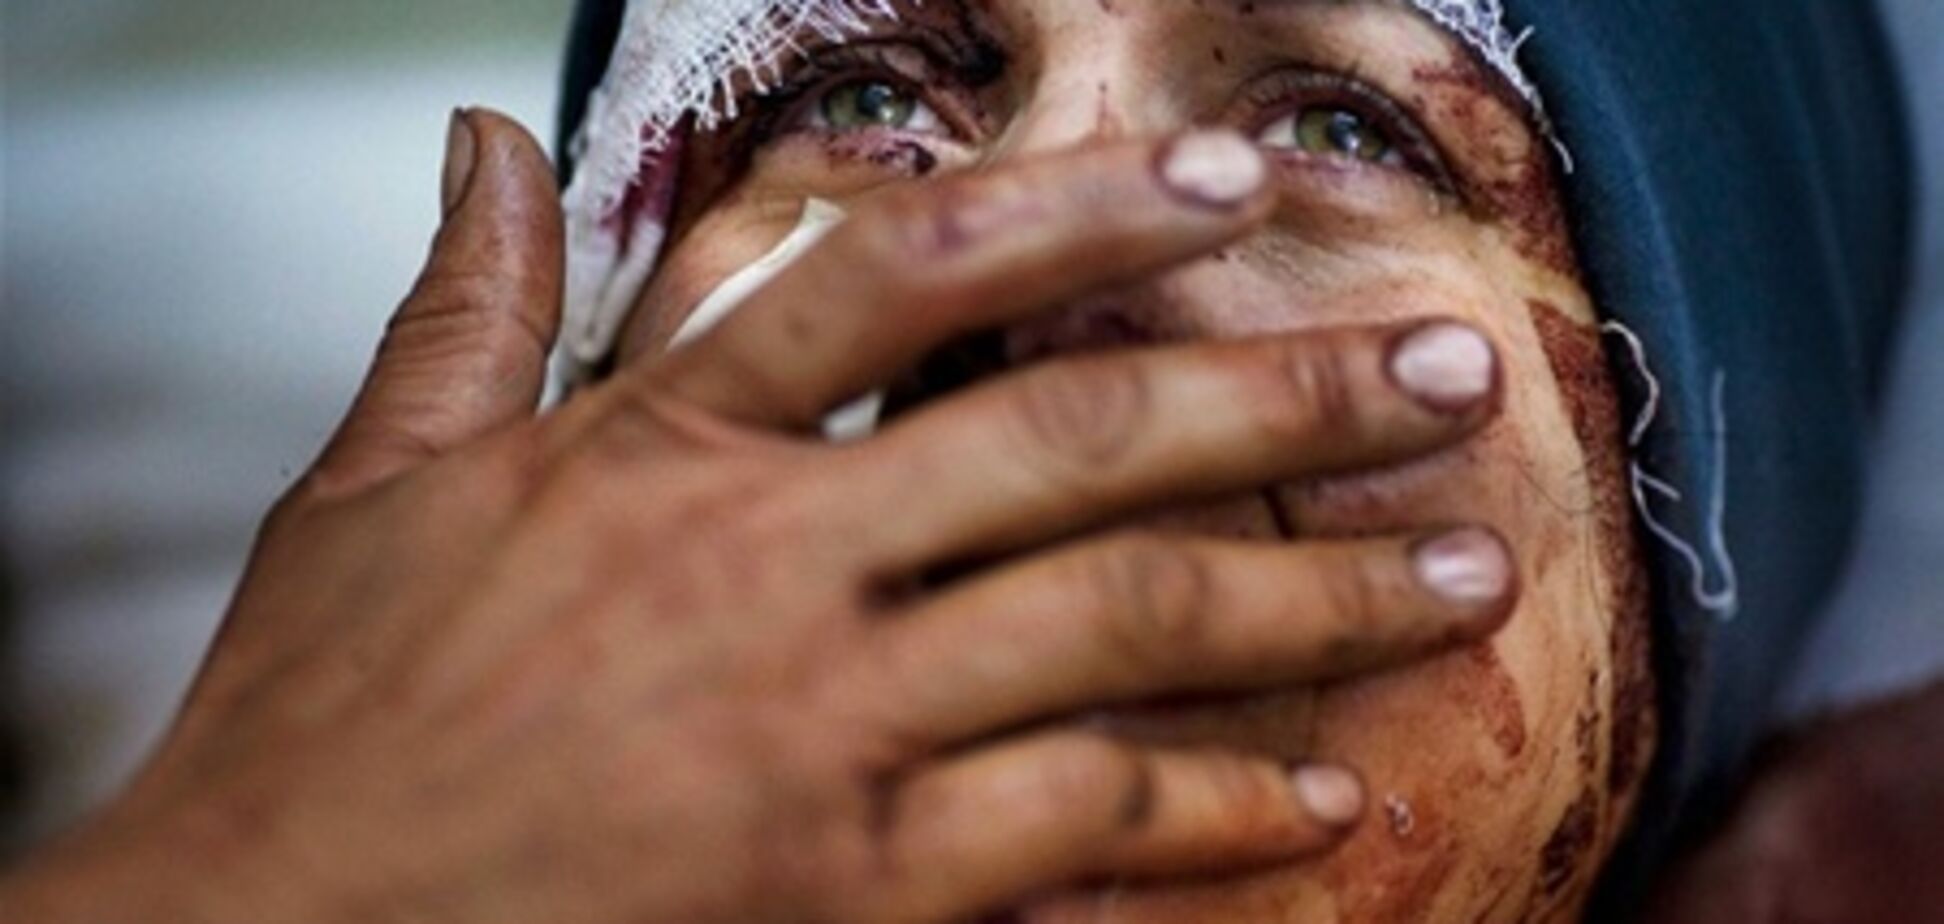 ООН назвала ситуацію в Сирії гуманітарною катастрофою